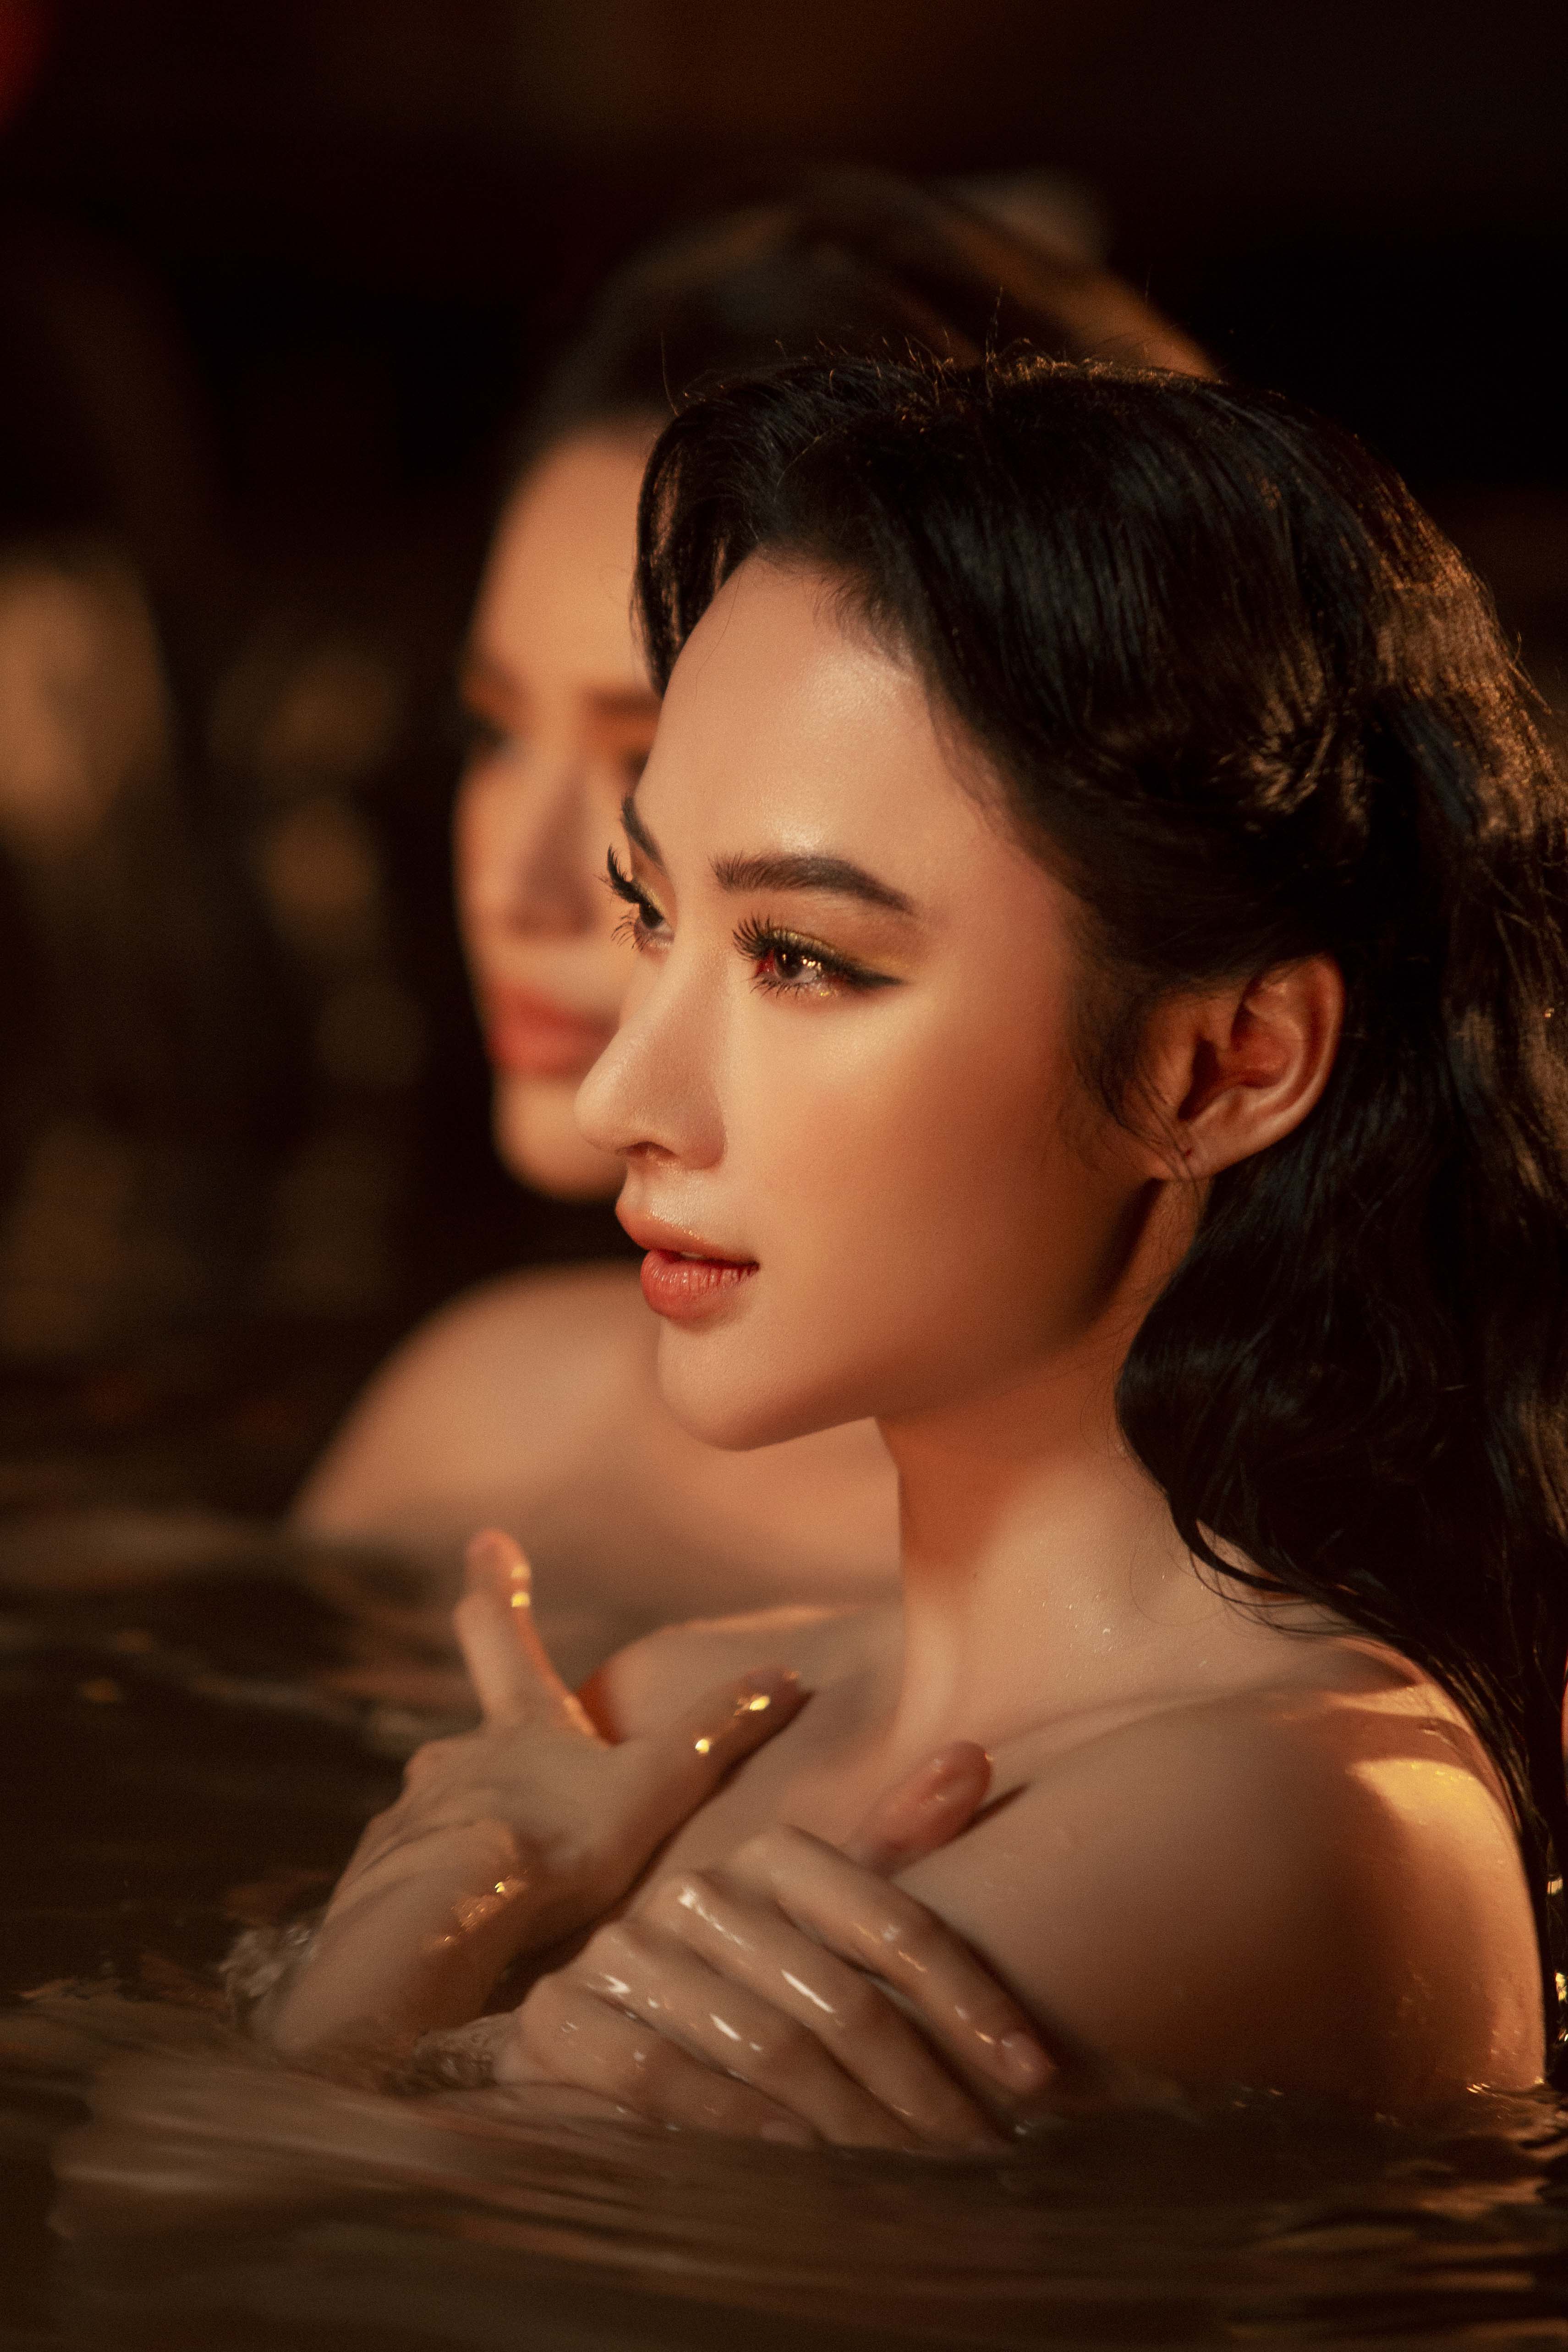 Angela Phương Trinh tung poster gợi cảm, netizen nghi vấn comeback phim drama với Tú Anh và Khánh Linh - ảnh 1